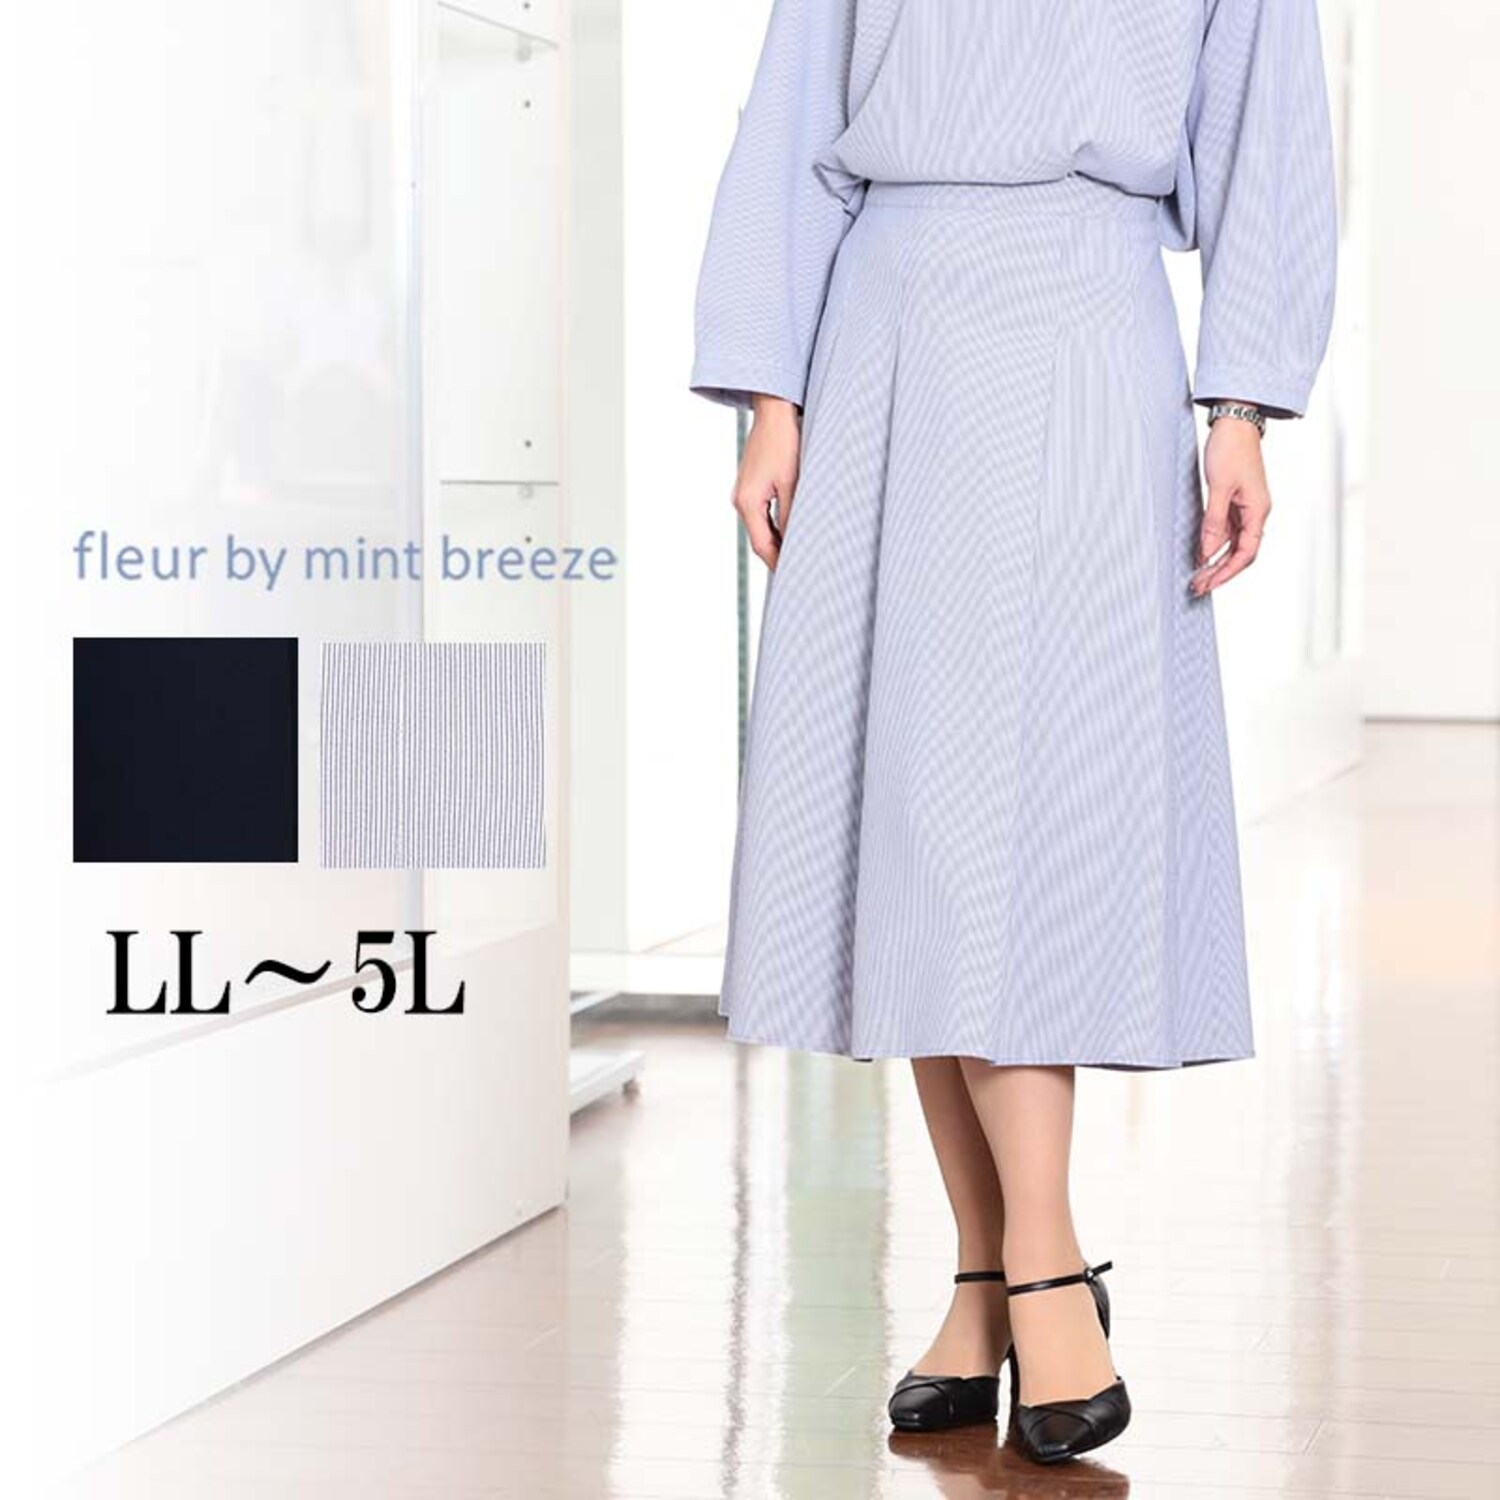 【フルールバイミントブリーズ/fleur by mint breeze】シアサッカーAラインスカート 【大きいサイズ】